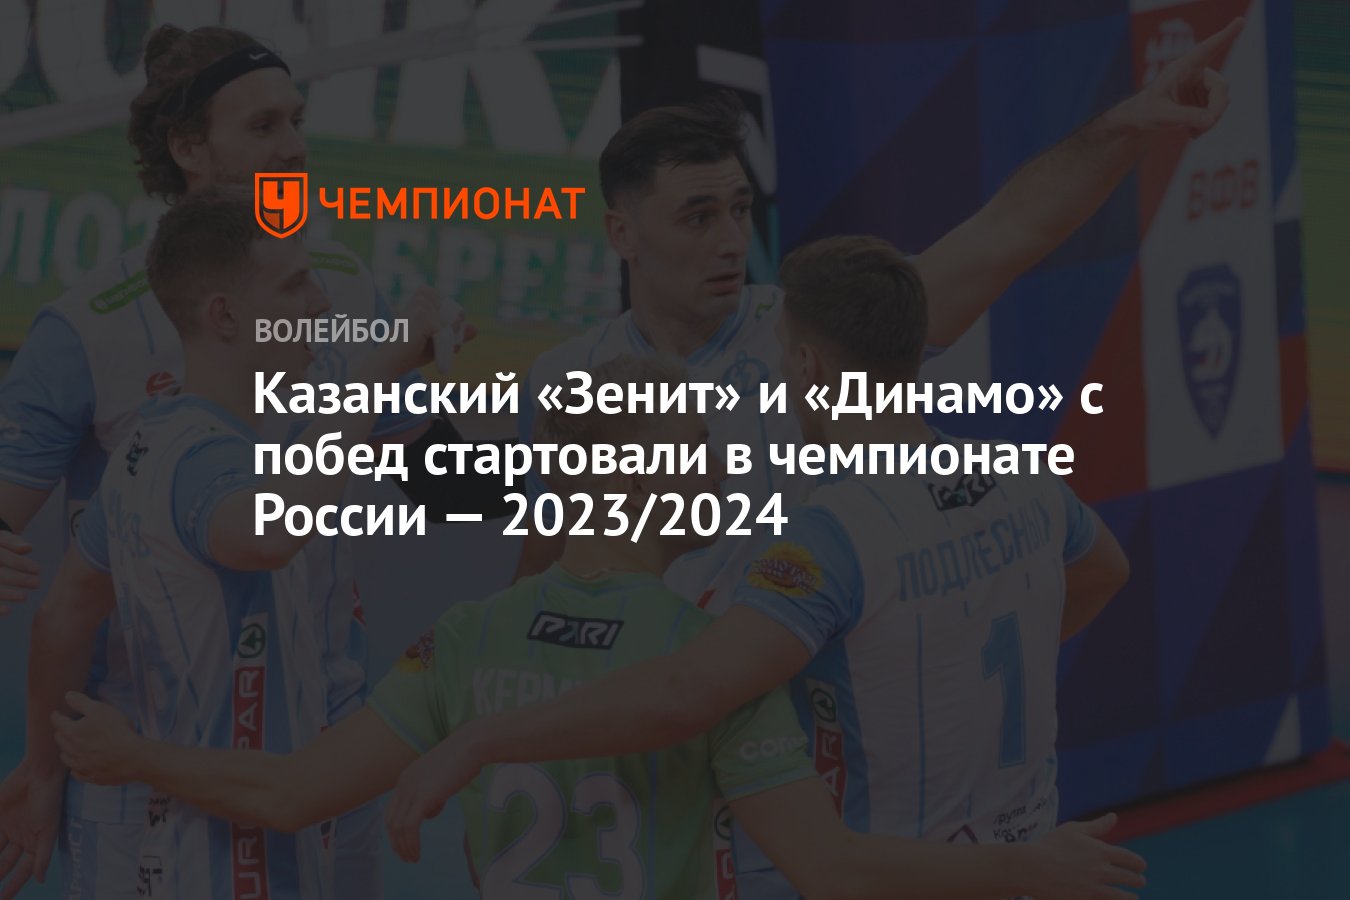 Волейбол чемпионат россии 2023 2024 мужчины локомотив. Чемпионат России по волейболу среди мужчин 2023/2024.